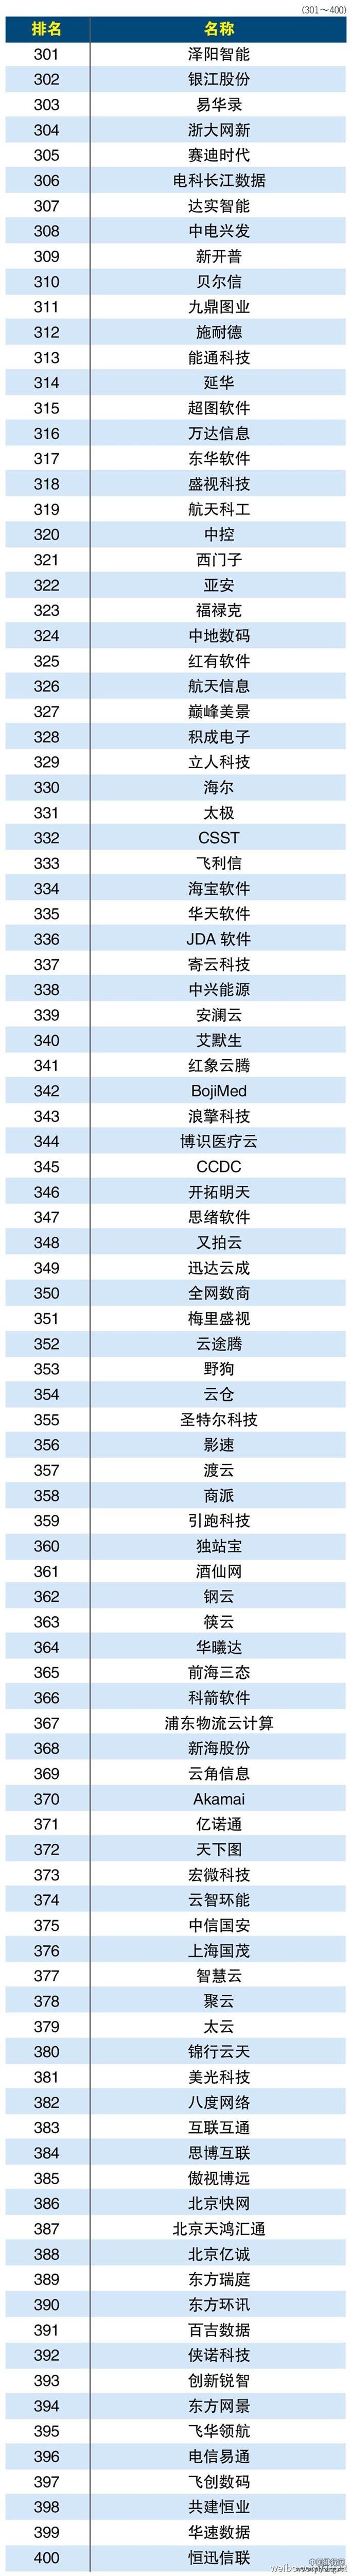 2015年中国云服务提供商排行榜Top500